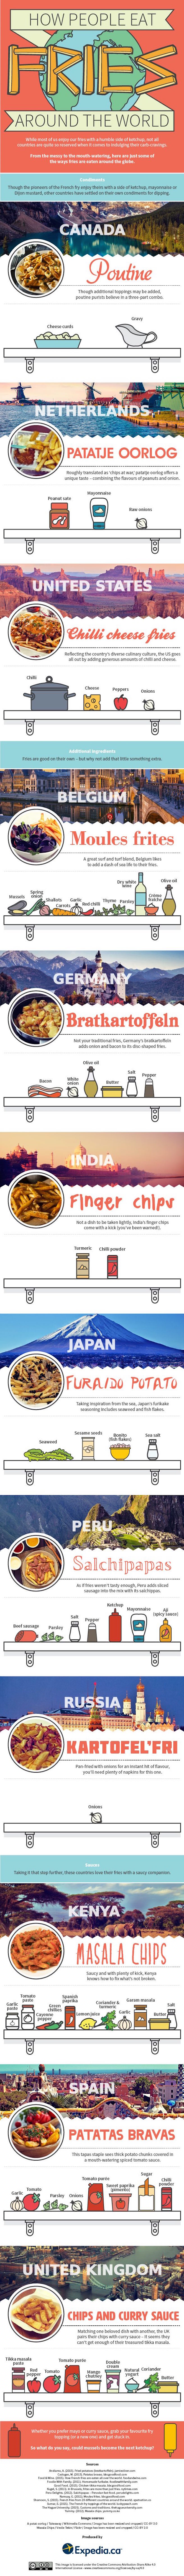 Comment mange t-on les French Fries à travers le monde-01